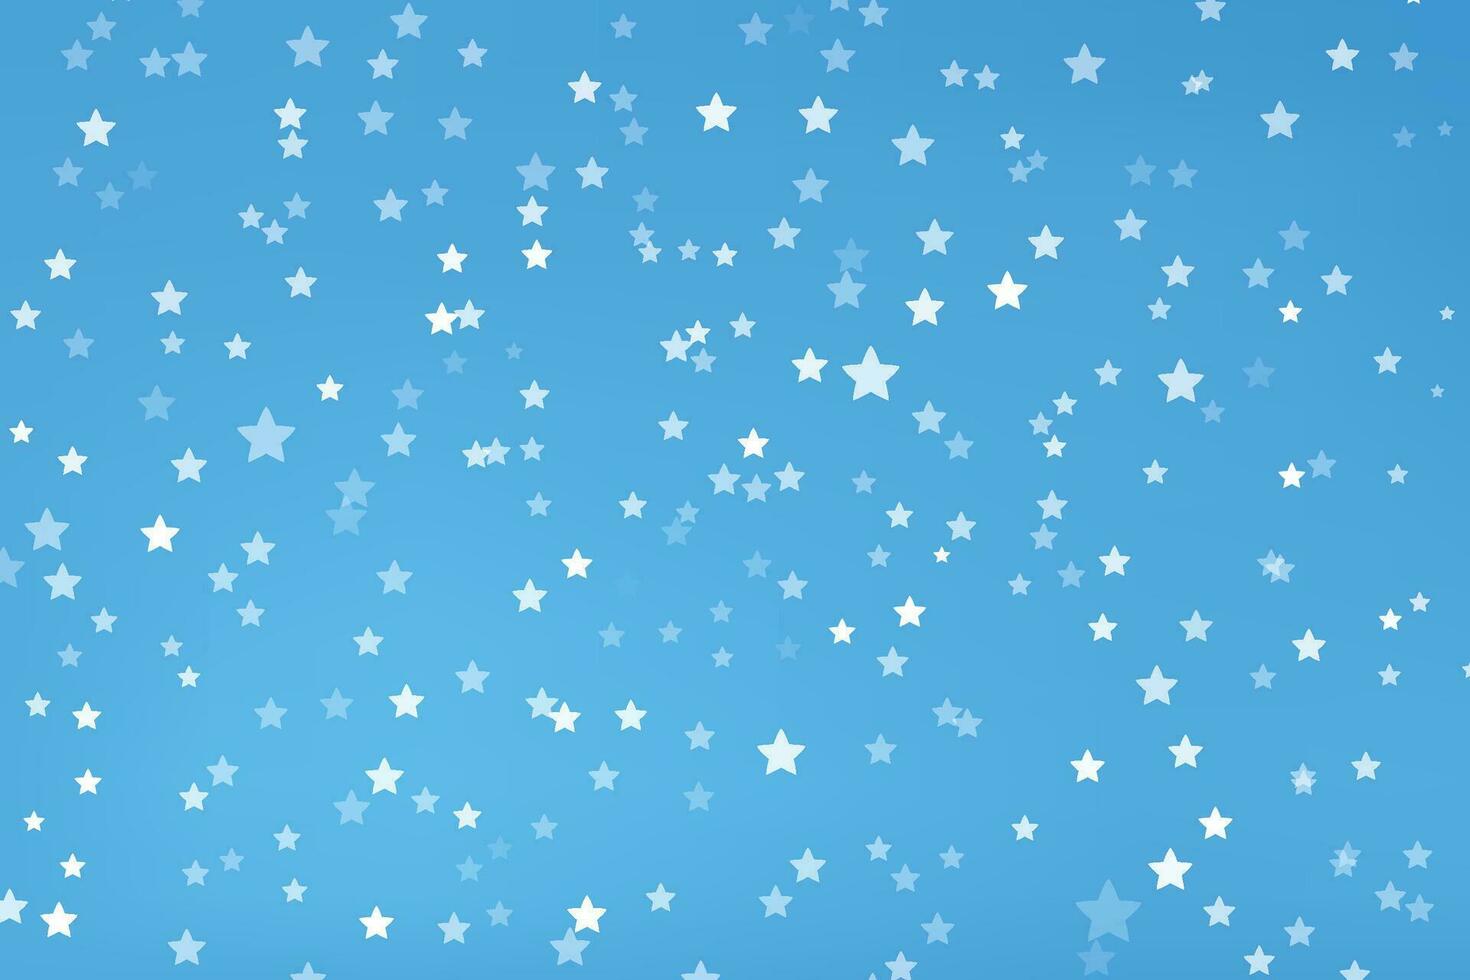 bianca colore stelle con occhiali da sole su blu vettore